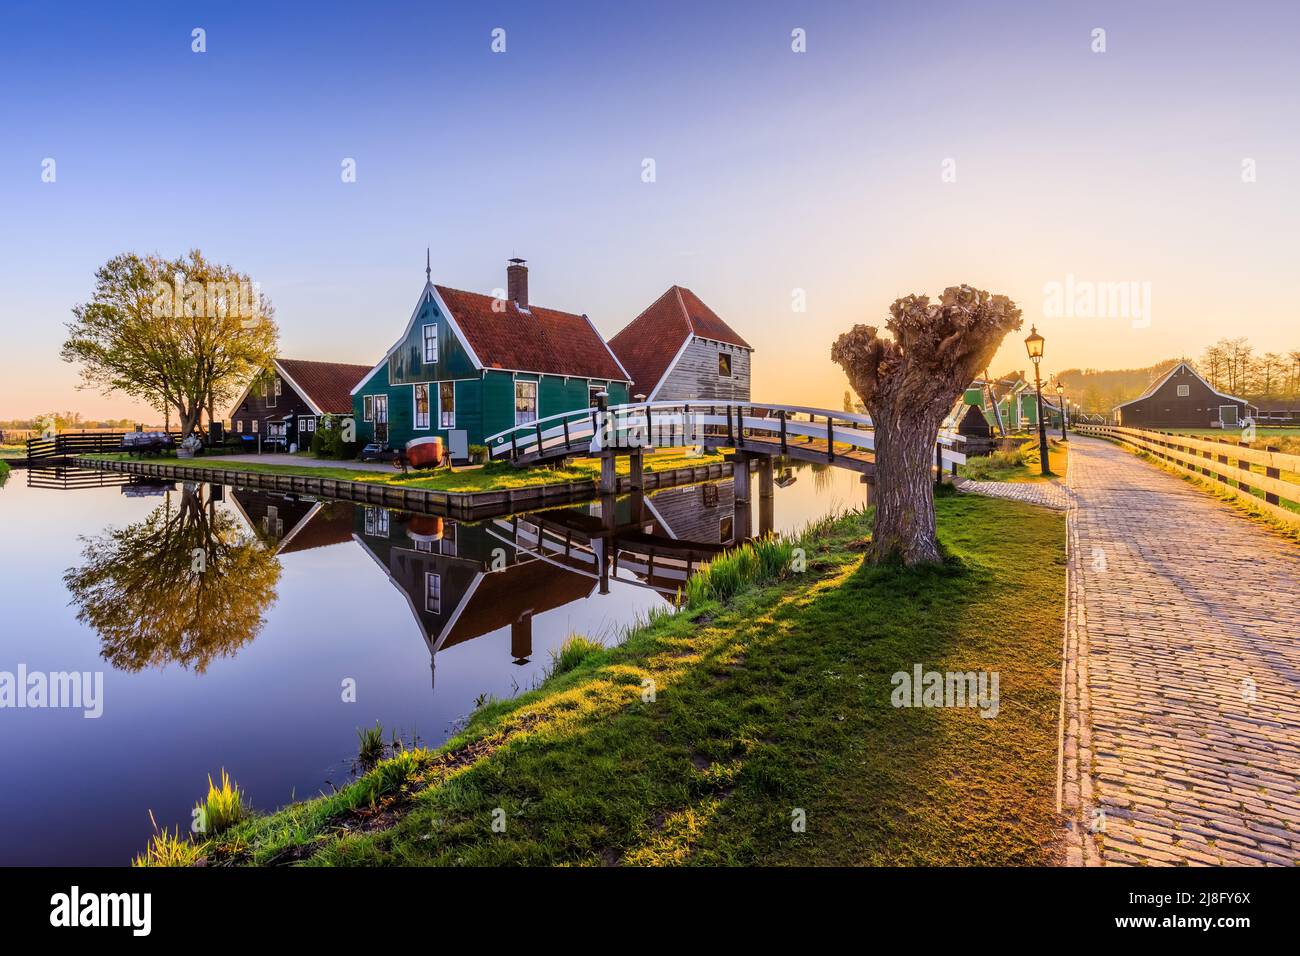 Village de Zaanse Schans, pays-Bas. Moulin à vent hollandais et maison traditionnelle au lever du soleil. Banque D'Images